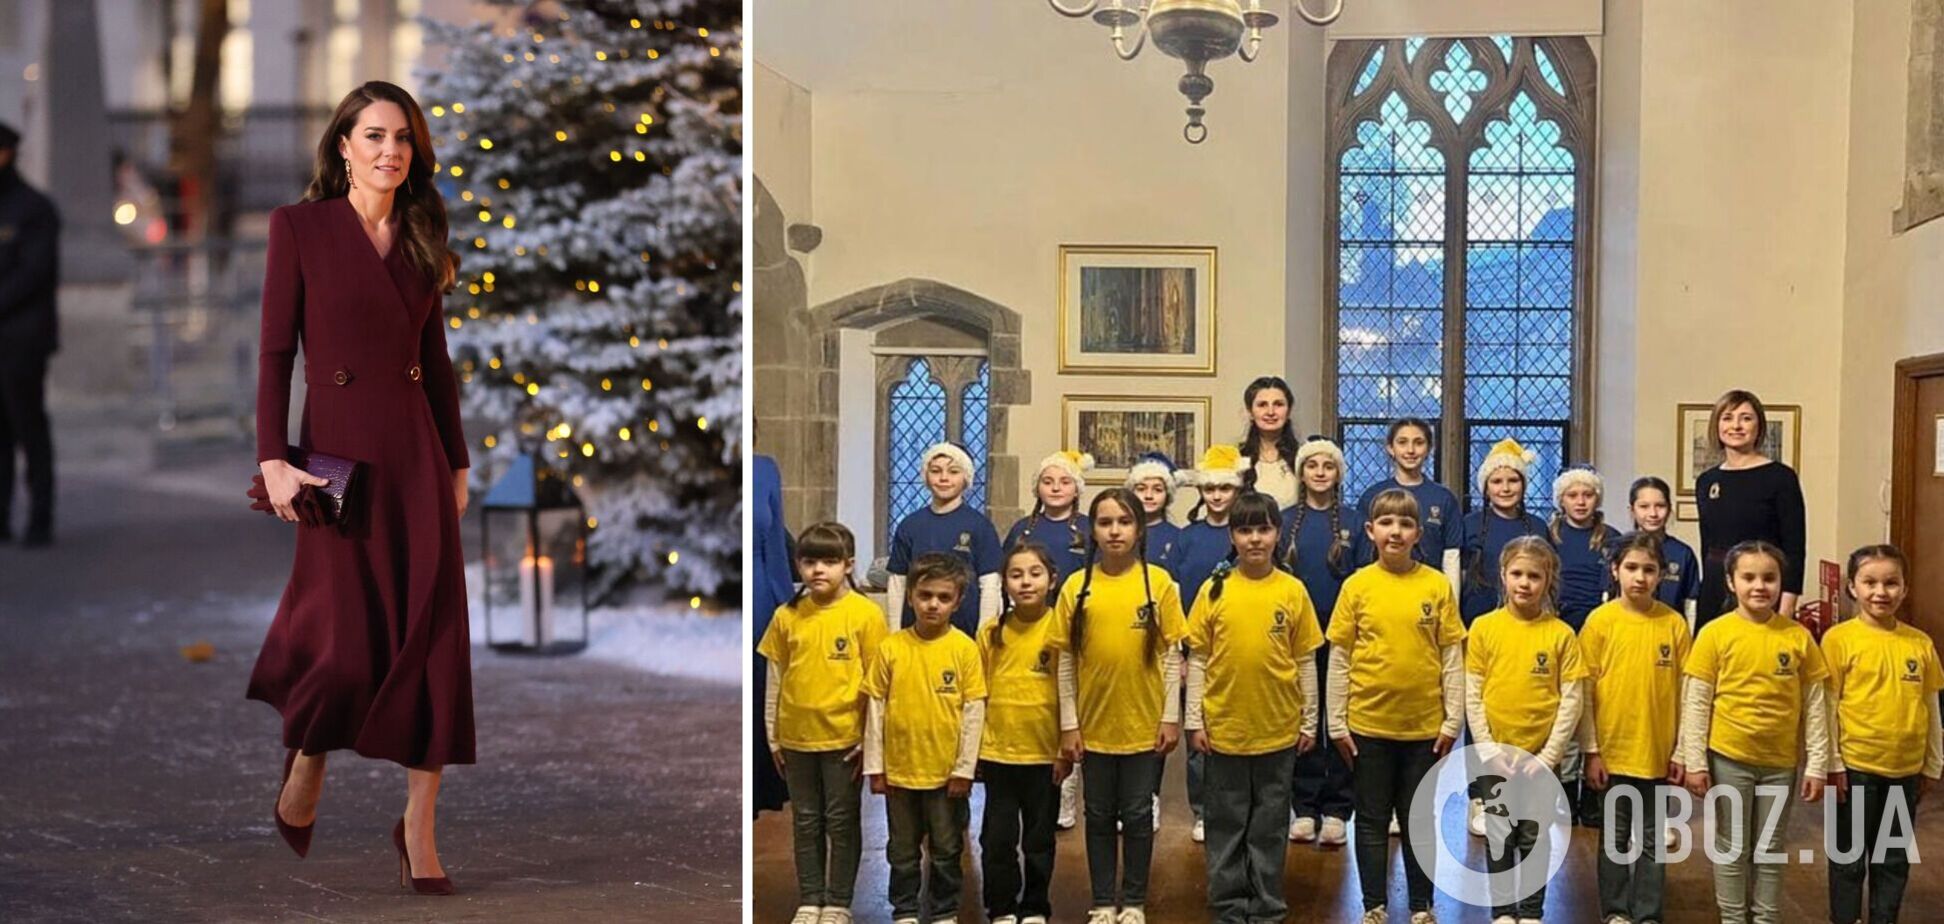 Детский хор из Украины выступил в Вестминстерском аббатстве в канун Рождества: их пригласила Кейт Миддлтон. Фото и видео